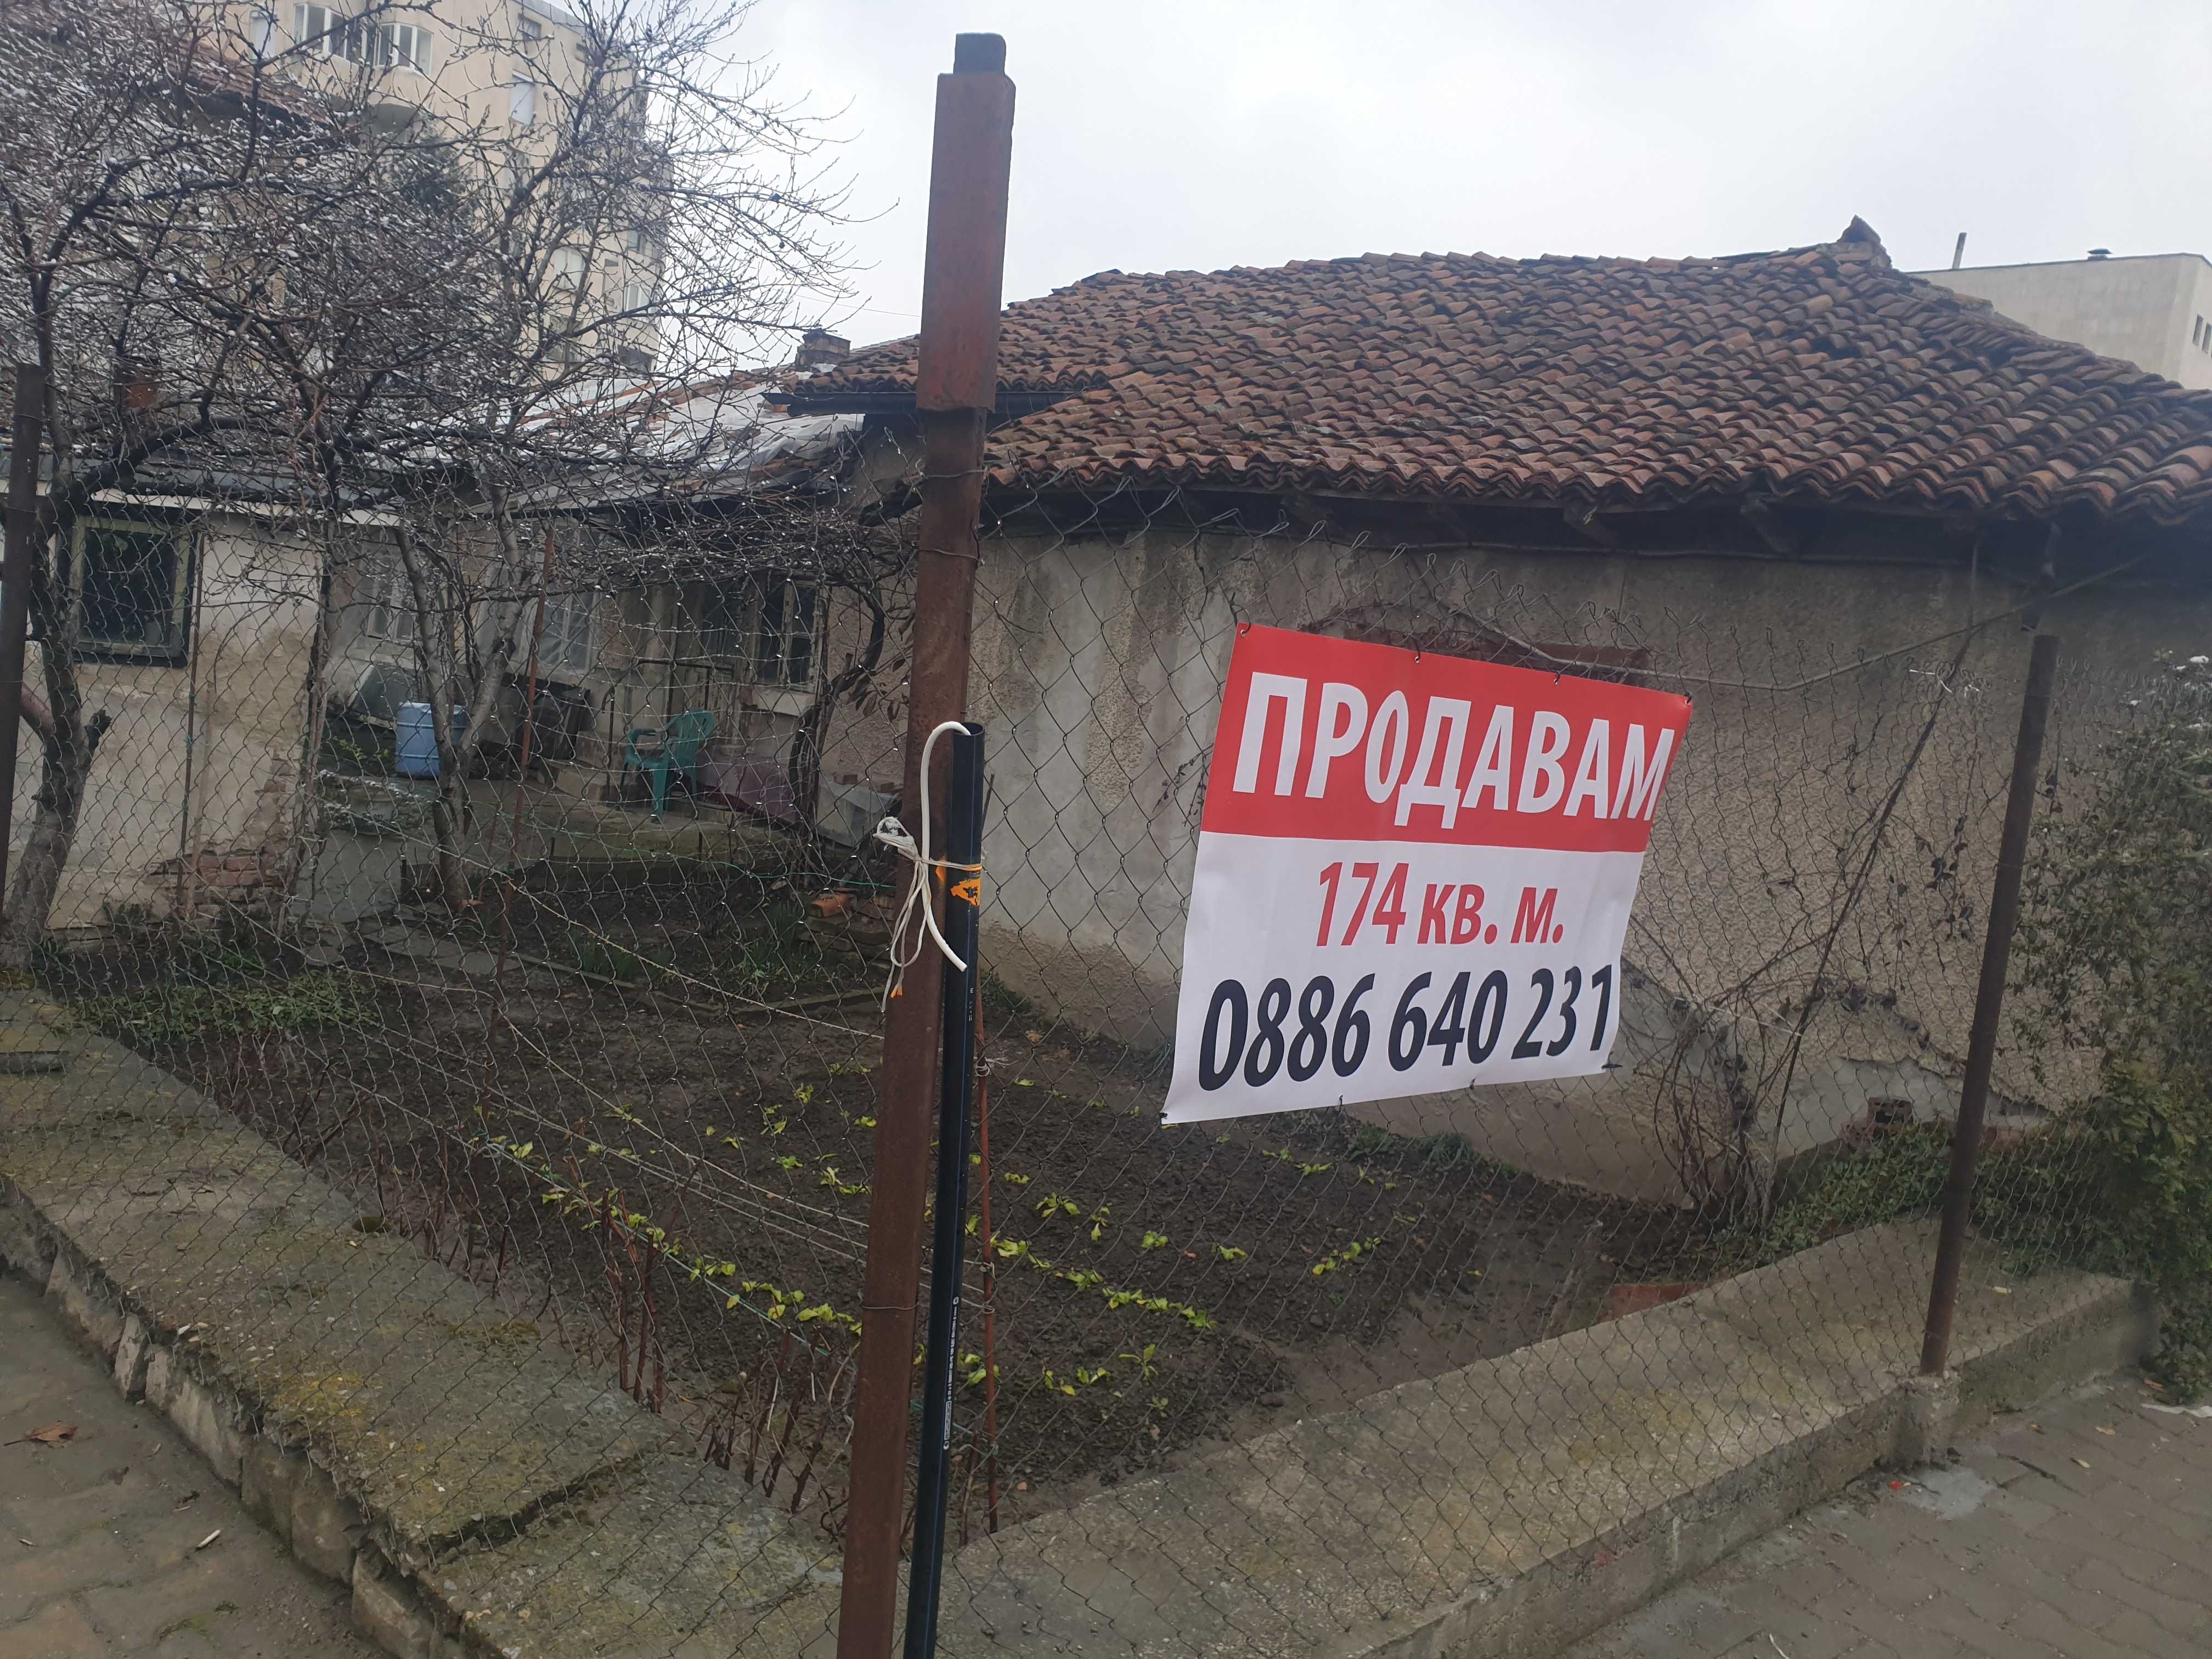 Продавам къща с търговско помещение - 174 кв.м./ЦЕНТЪР - гр. Севлиево/